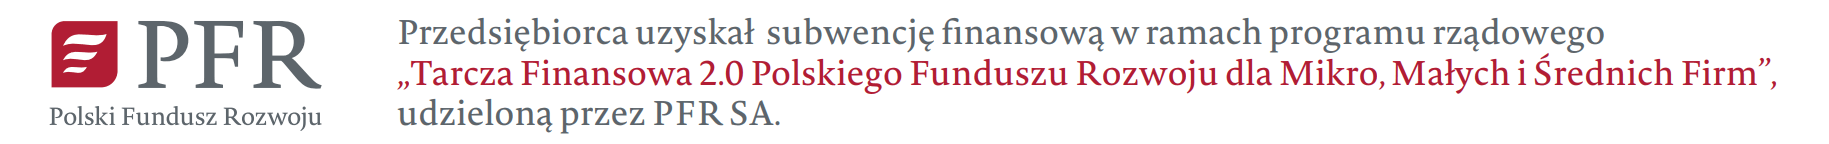 Przedsiębiorca uzyskał subwencję Finansową w ramach programu rządowego Tarcza Finansowa 2.0 Polskiego Funduszu Rozwoju dla Mikro, Małych i Średnich Firm, udzieloną przez PFR SA